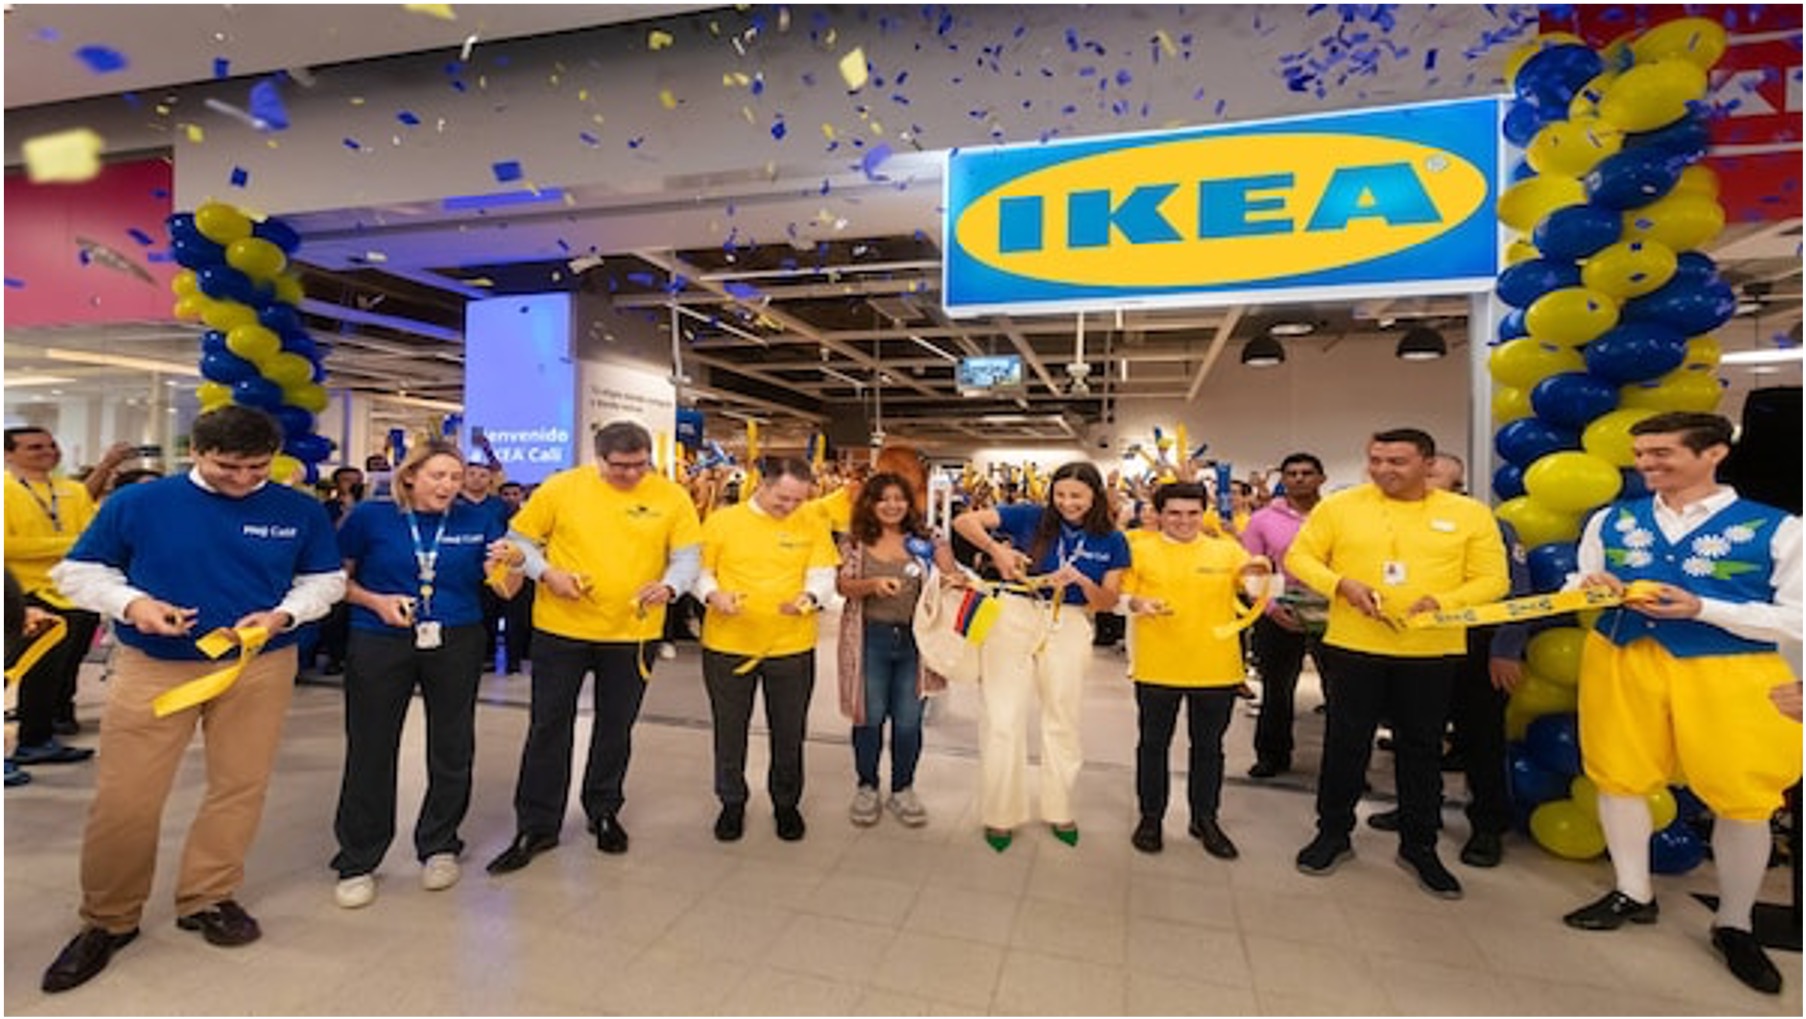 IKEA abrió su segunda tienda en Colombia